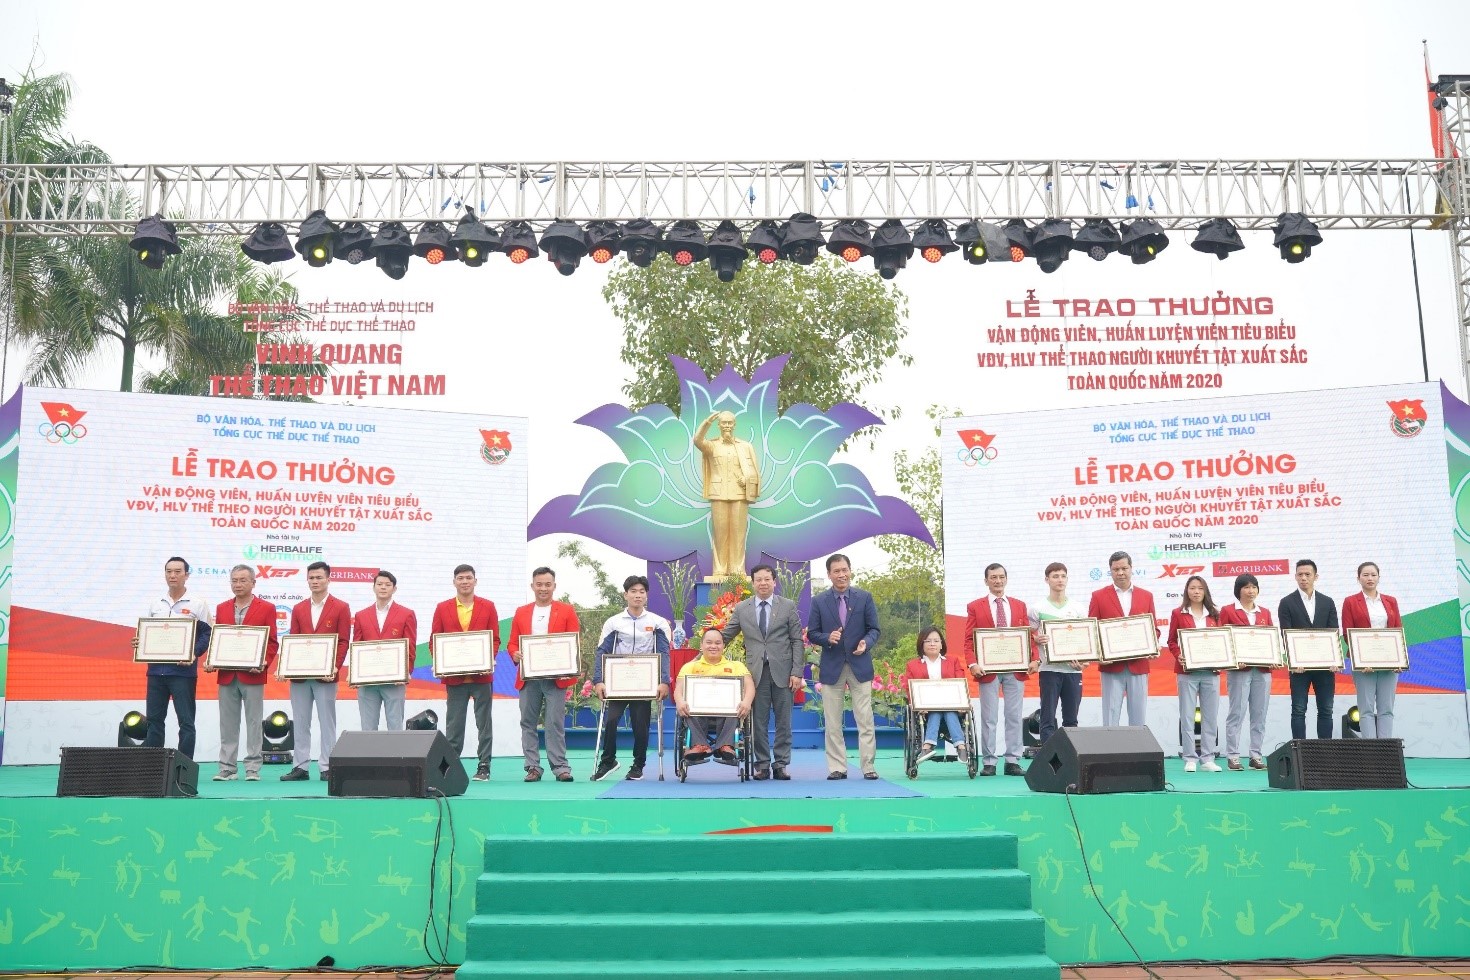 Herbalife Việt Nam đồng hành cùng Tổng Cục Thể Dục Thể Thao vinh danh VĐV, HLV tiêu biểu 2020 và tổ chức Ngày chạy Olympic vì sức khỏe toàn dân